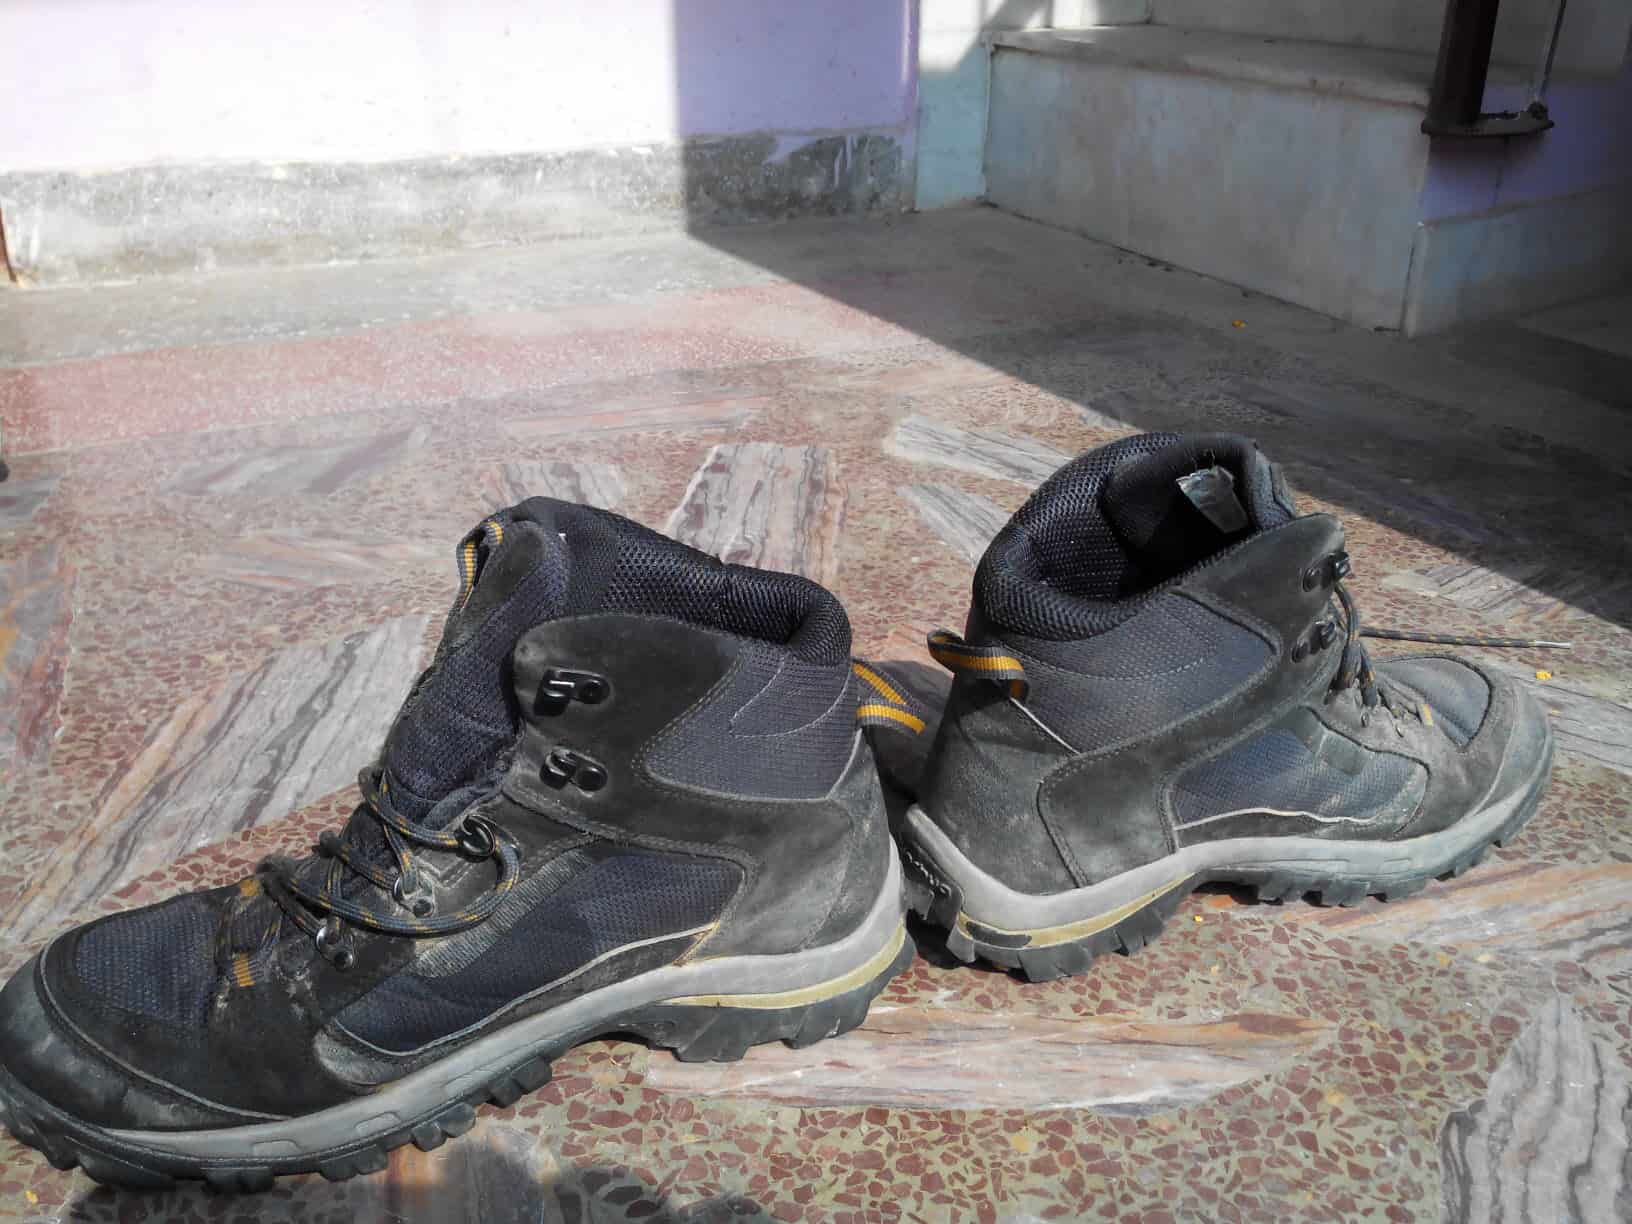 Quechua 500 M Forclaz Hiking Boots, Men's UK 8.5 (Multicolour) : Amazon.in:  Shoes & Handbags